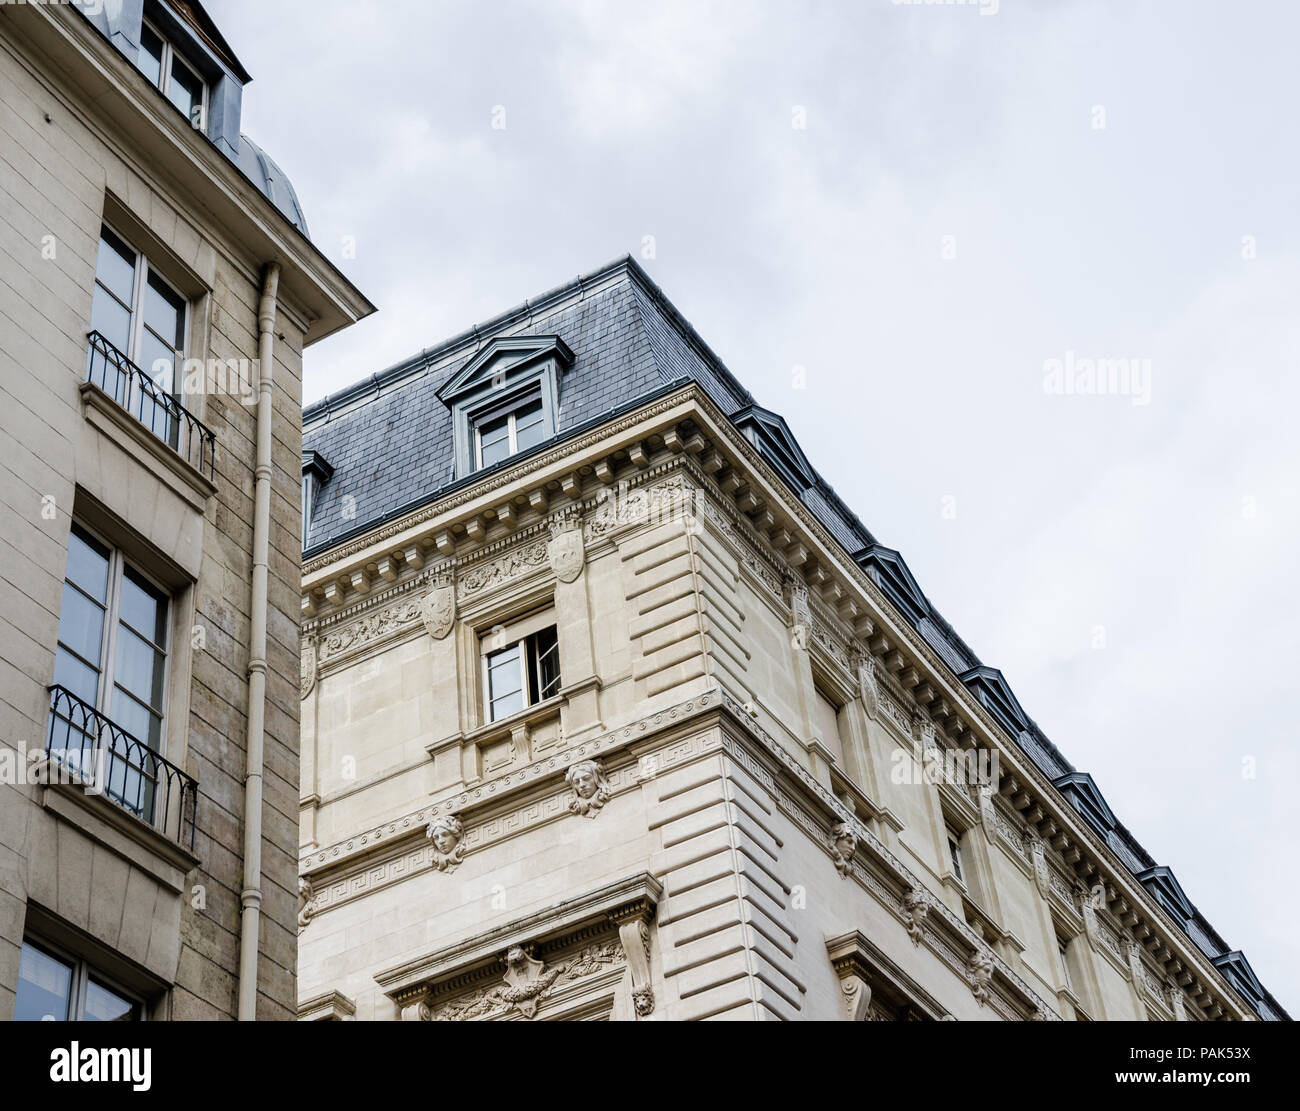 Fermer la vue perspective de bâtiments générique en France, à Paris, avec de belles balconets et greniers avec lucarnes typiques de l'architecture française Banque D'Images